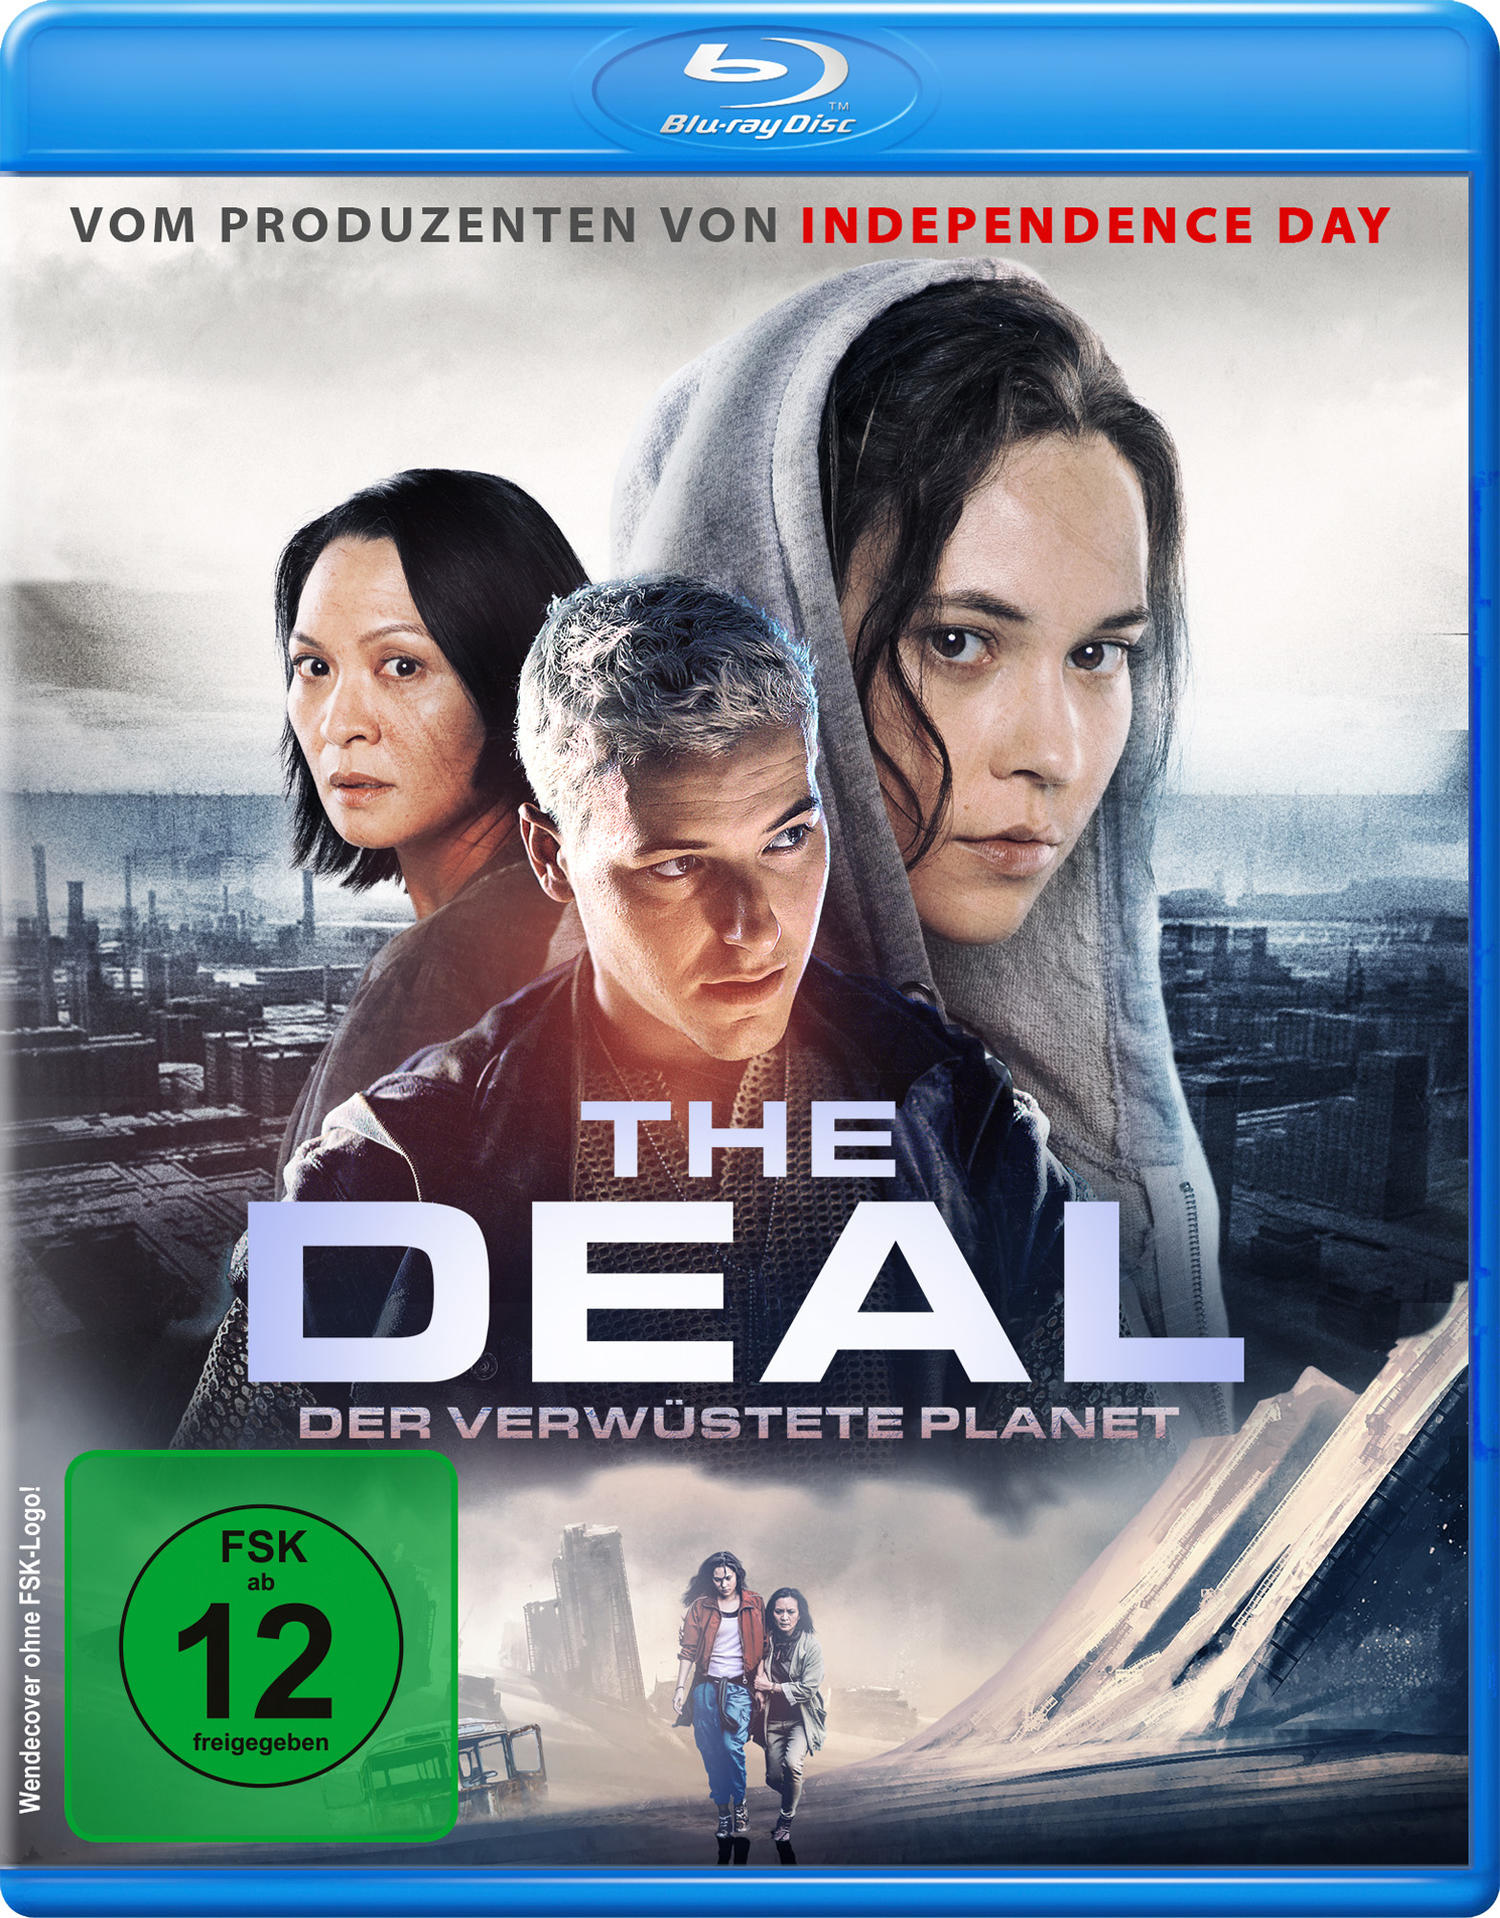 The Deal - verwüstete Der Planet Blu-ray